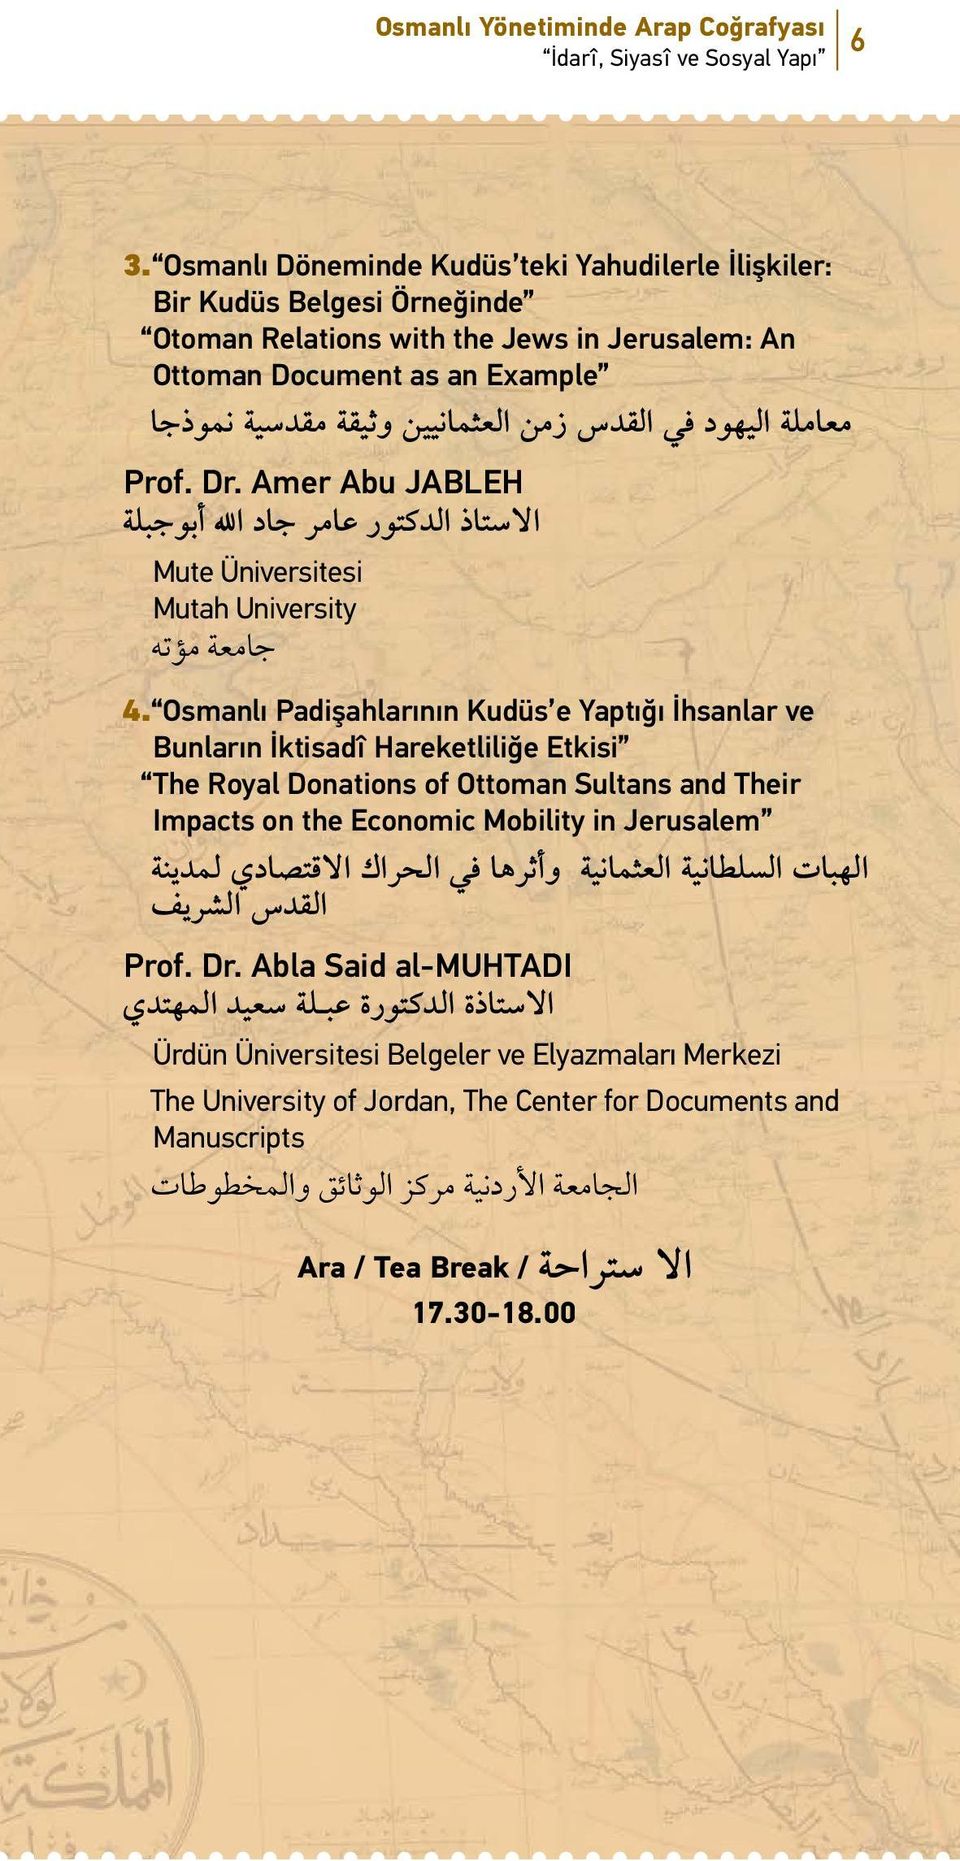 وثيقة مقدسية نموذجا Prof. Dr. Amer Abu JABLEH االستاذ الدكتور عامر جاد اهلل أبوجبلة Mute Üniversitesi Mutah University جامعة مؤته 4.